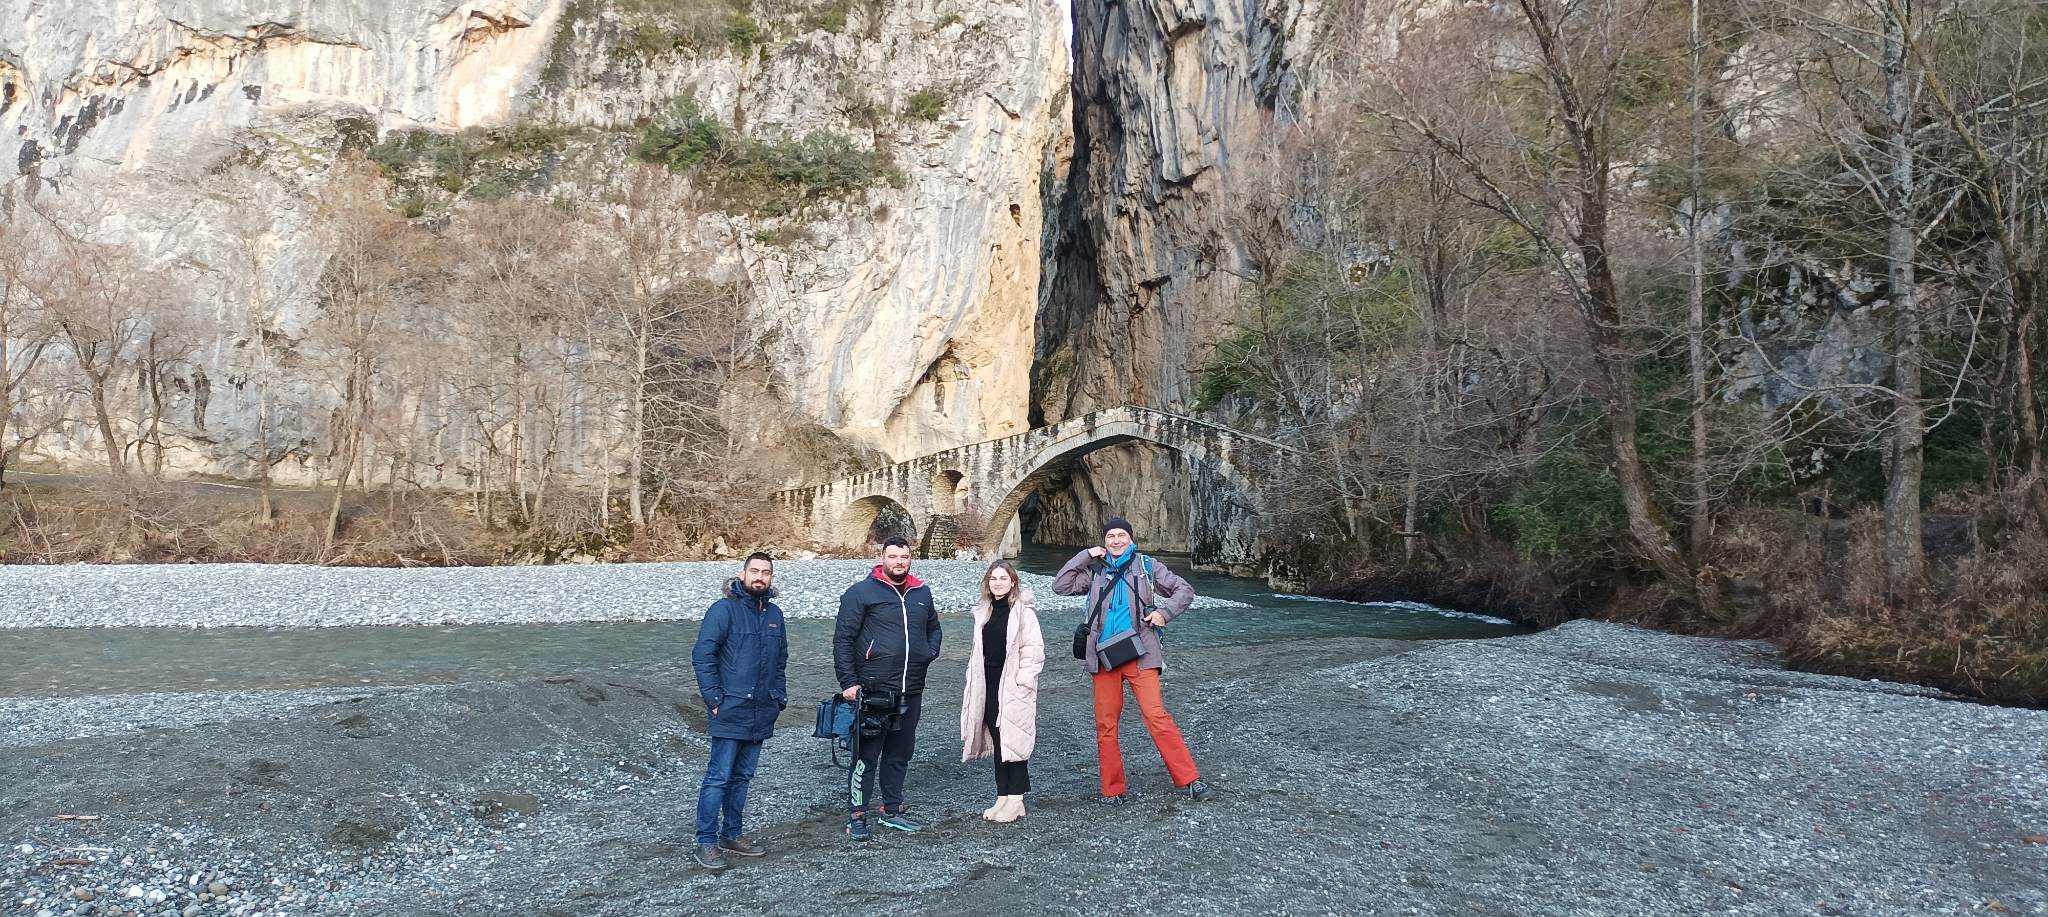 Ταξίδι εξοικείωσης για την προβολή των χειμερινών προορισμών που διαθέτουν χιονοδρομικά κέντρα στο ταξιδιωτικό κοινό της Ρουμανίας -1-